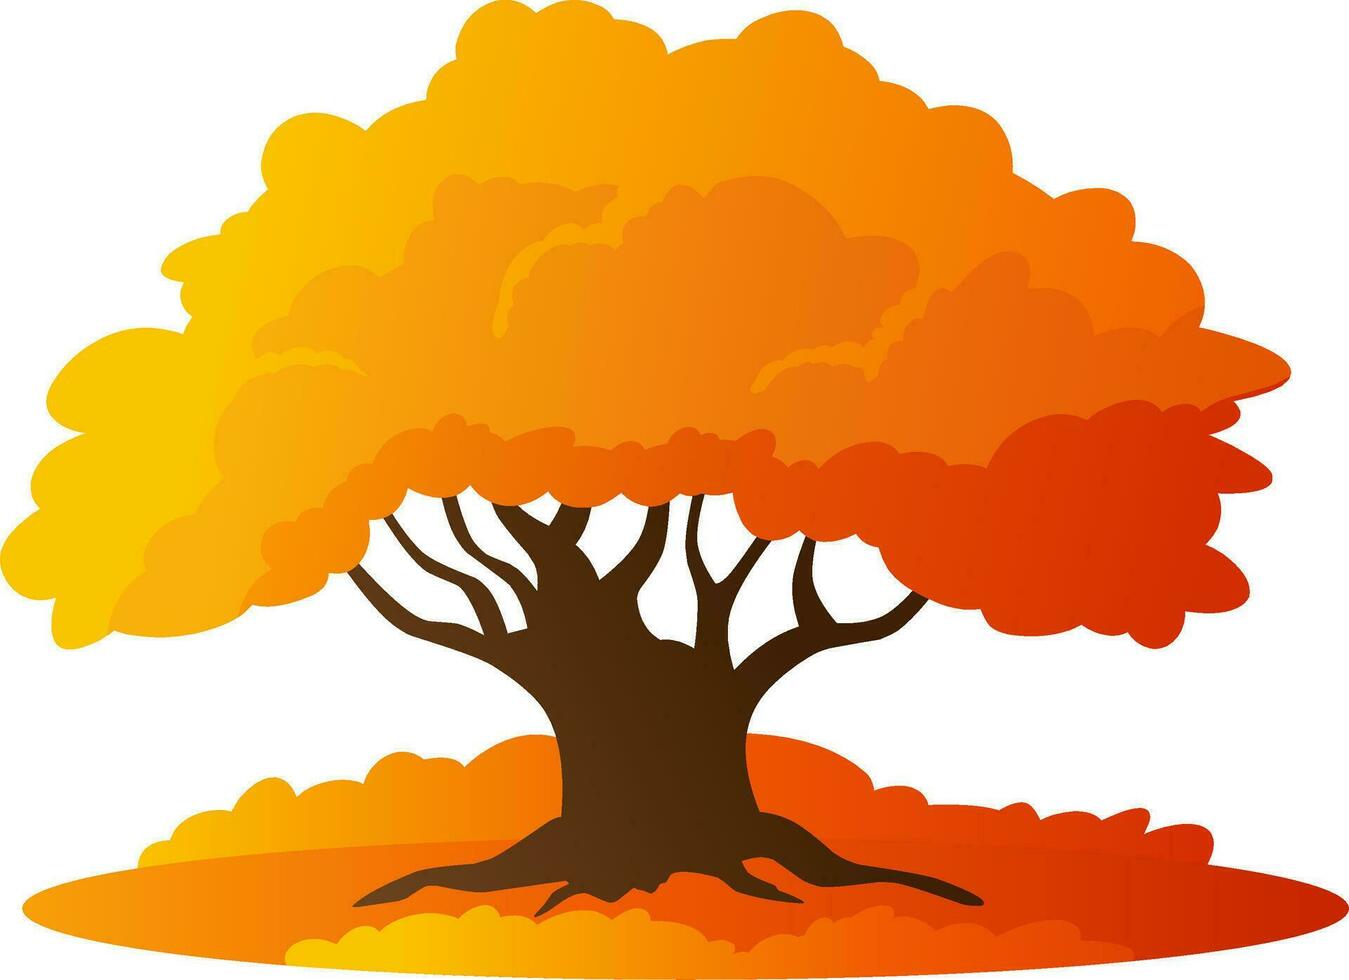 Herbst Eiche Baum Vektor Illustration. fallen Jahreszeit Eiche Baum Design mit Busch und Gras. Herbst Grafik Ressource zum Symbol, Zeichen, Symbol oder Dekoration. fallen Jahreszeit Baum zum Wald, Pflanze oder Umgebung